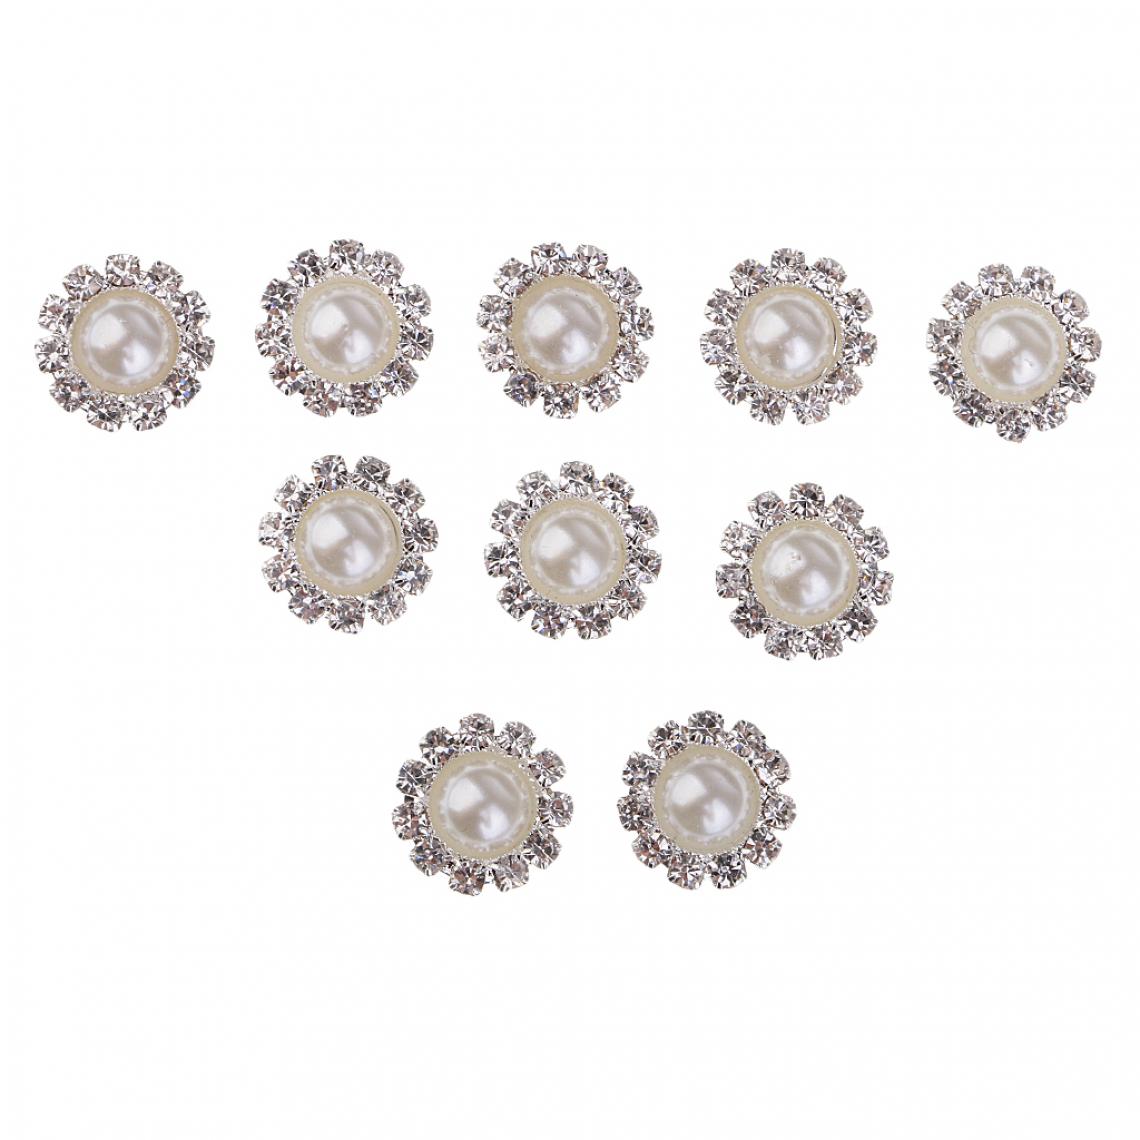 marque generique - 10 pièces rondes perles strass ornements de boutons 10mm or assorti - Poignée de meuble